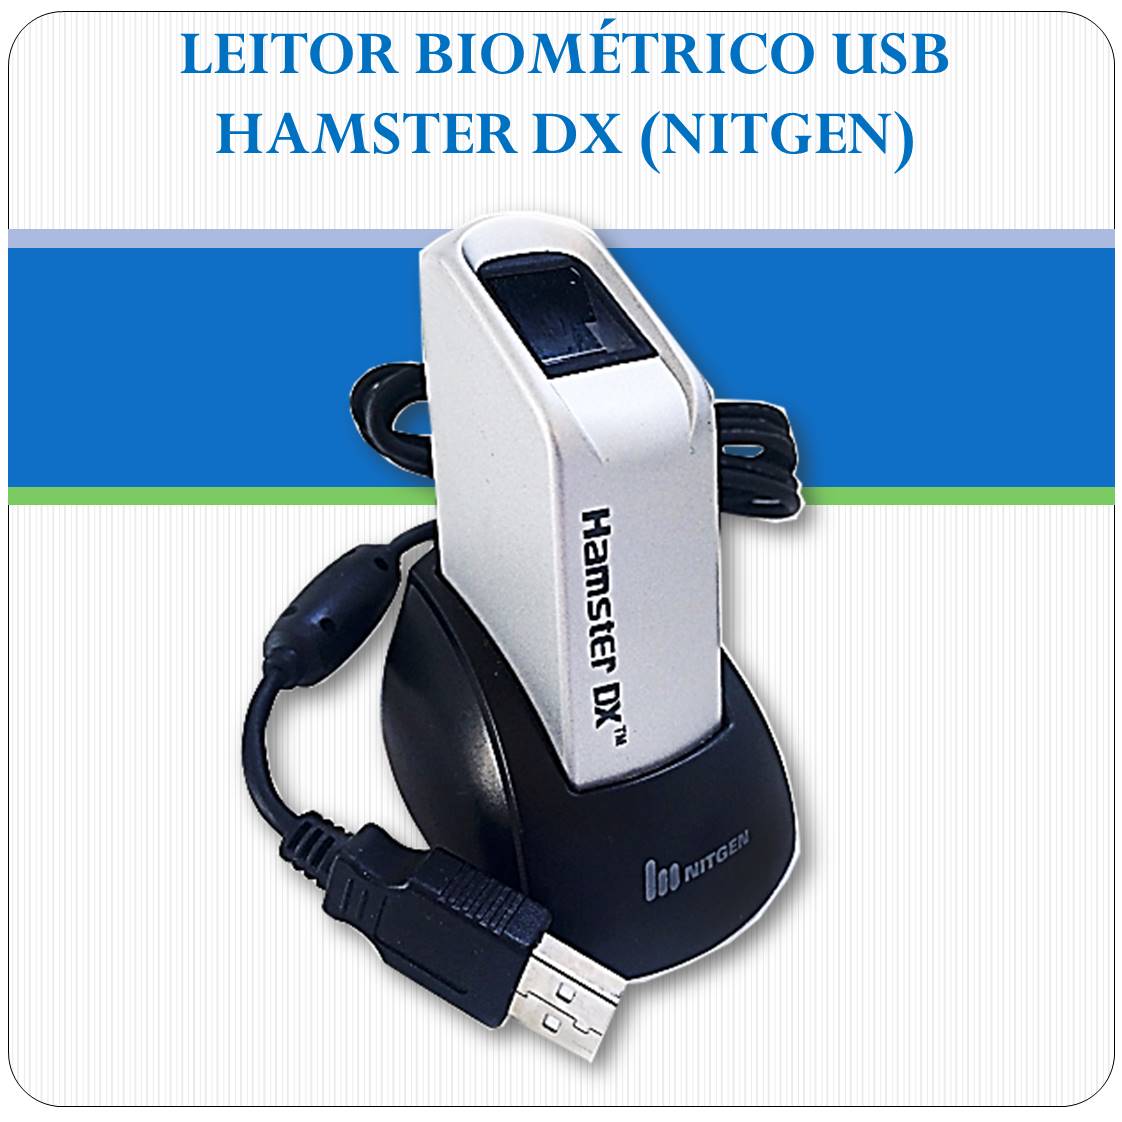 Leitor Biométrico USB - HAMSTER DX - Nitgen